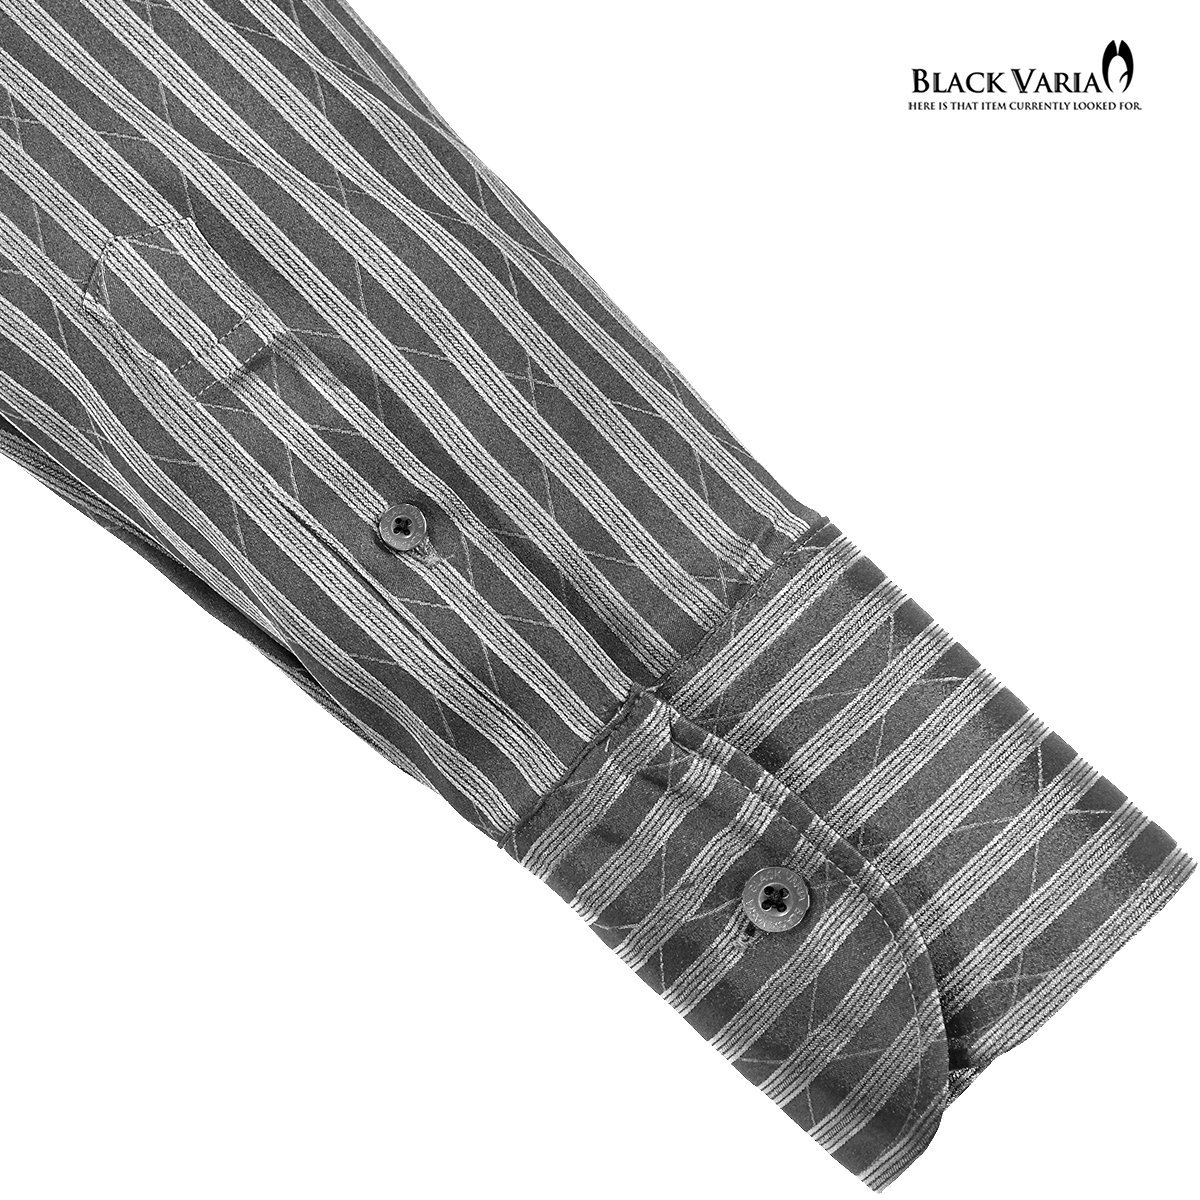 191852-gyS BLACK VARIA ストライプ織柄 スキッパー スワロフスキー ドレスシャツ スリム メンズ(ブラックダイヤ釦 グレー灰シルバー銀) M_ブラックダイヤ釦